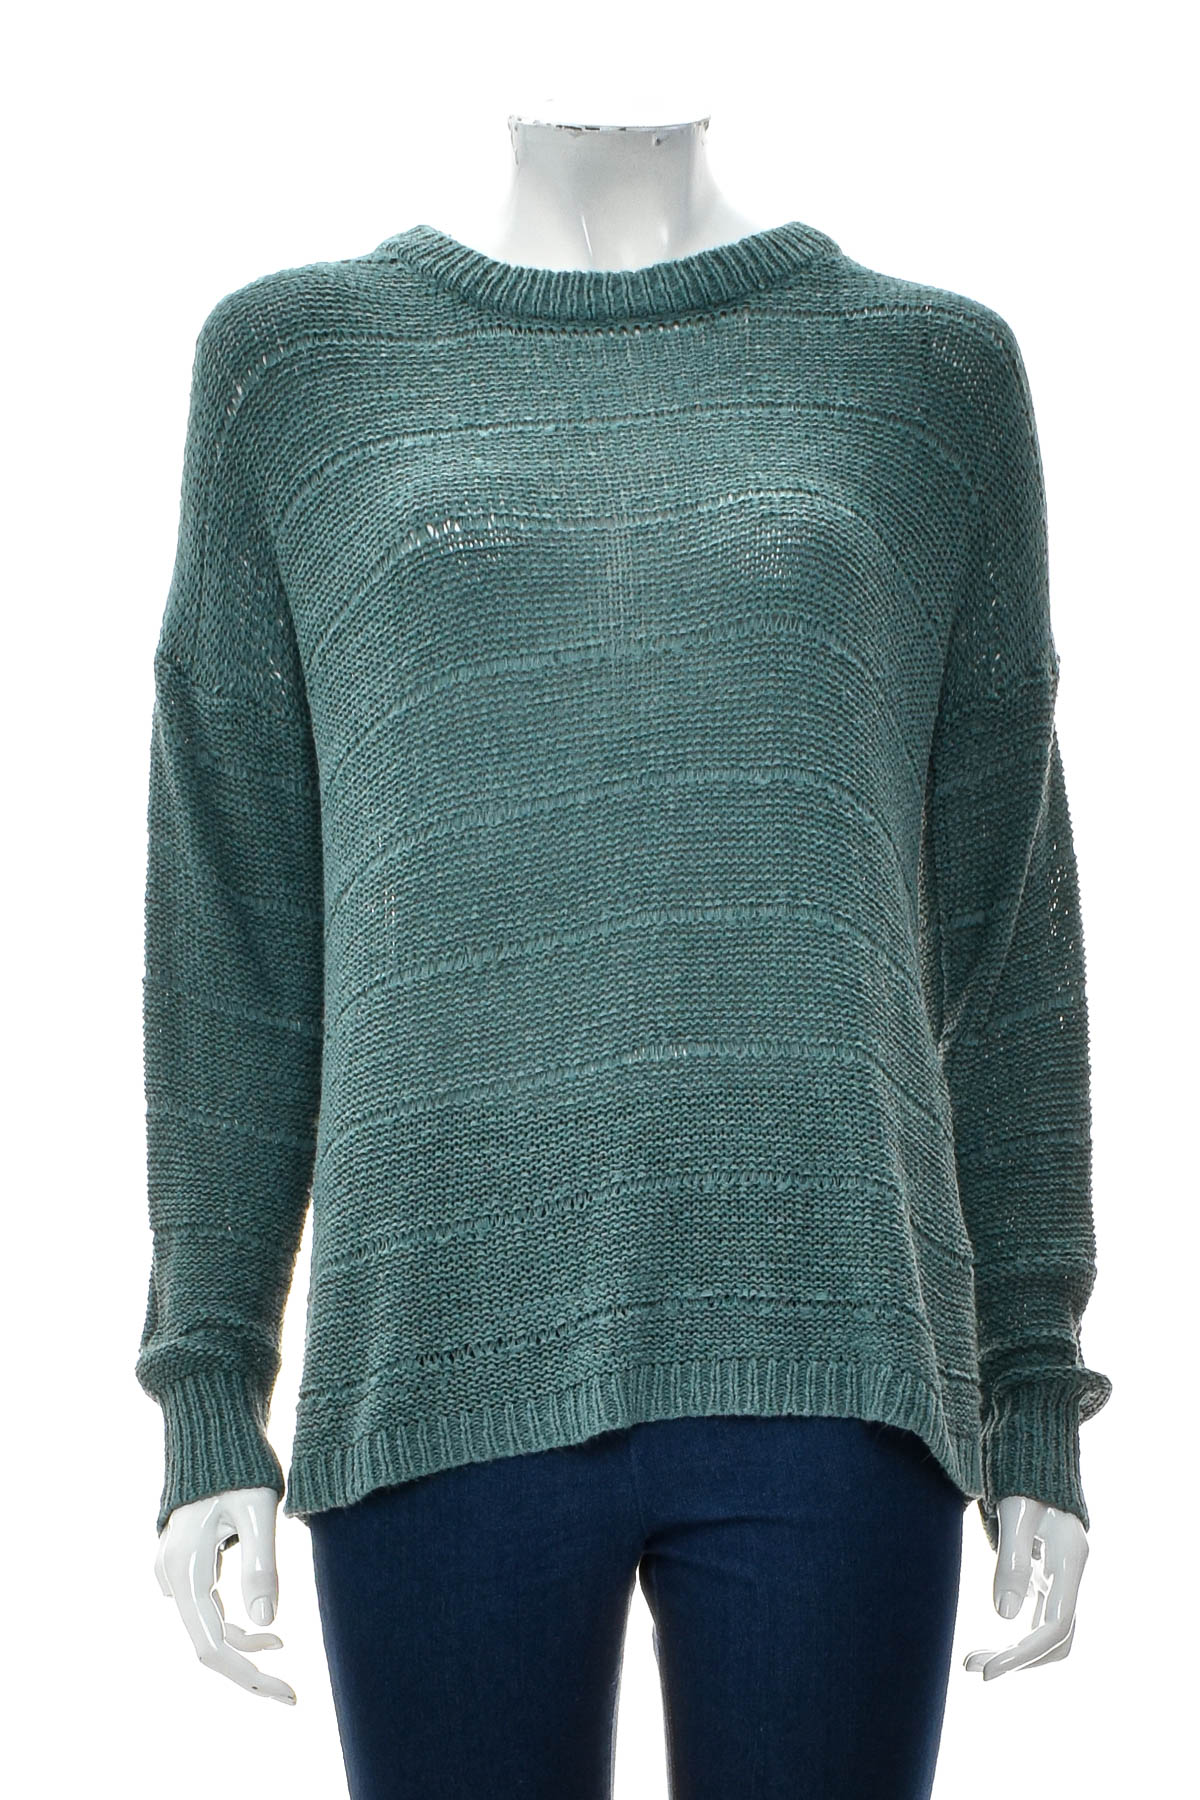 Women's sweater - Blind Date - 0